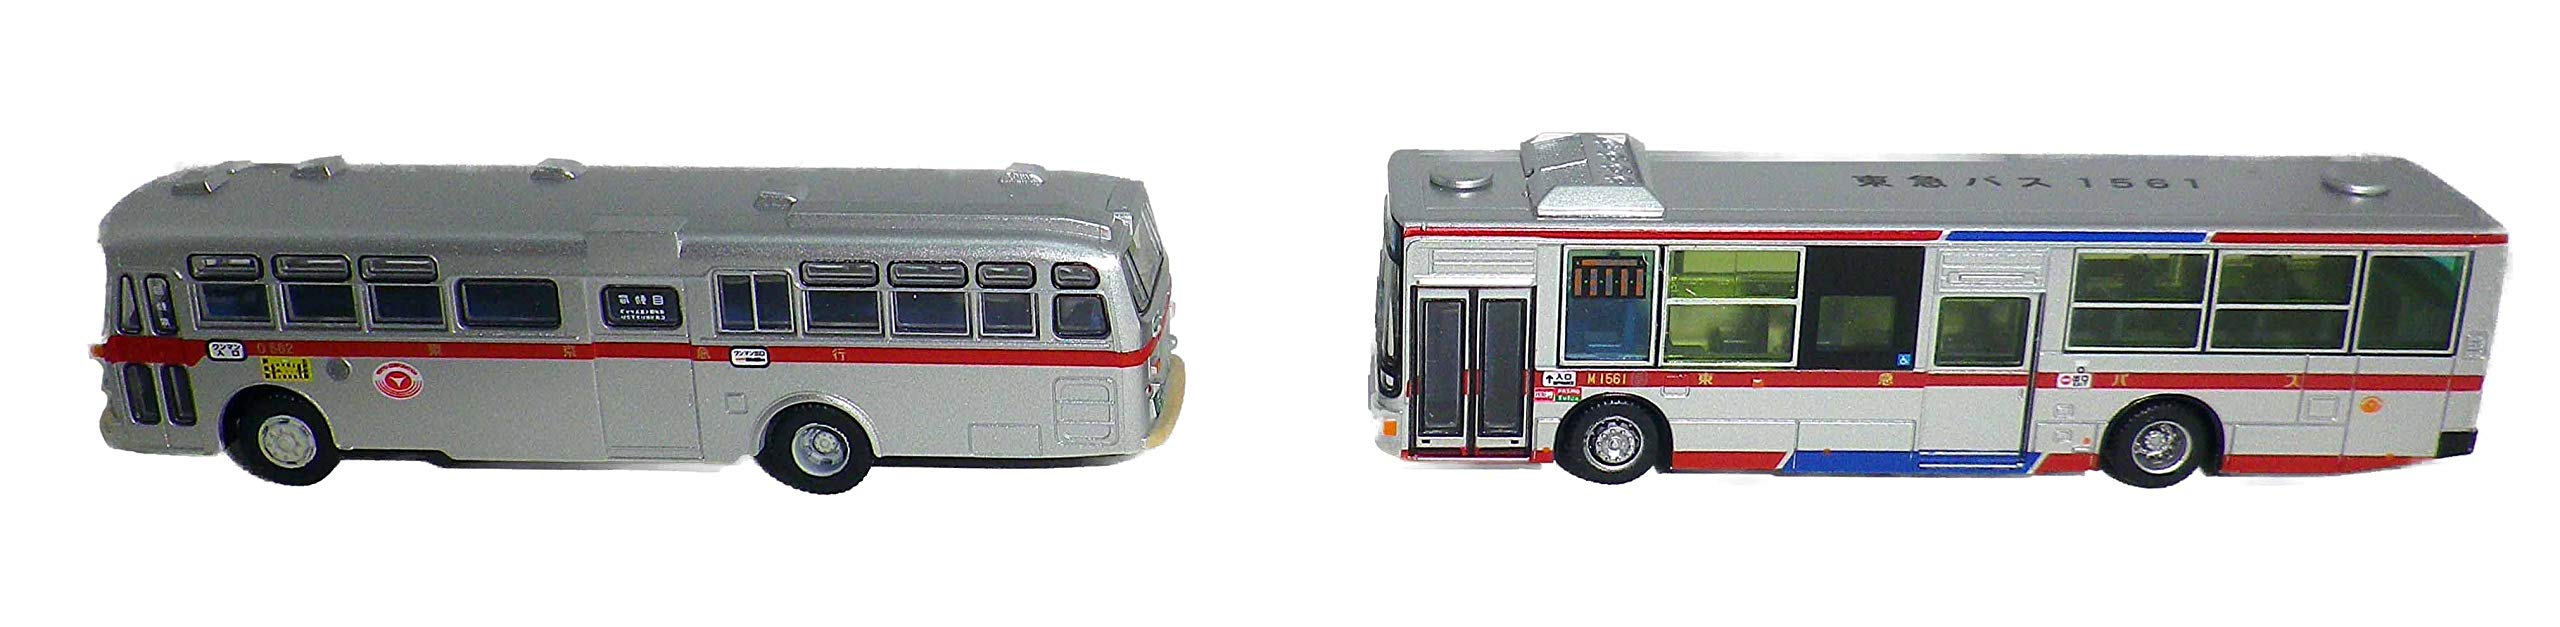 Collection de bus Tomytec - Coffret de voitures longues originales, neuves et anciennes, édition Tokyu Bus